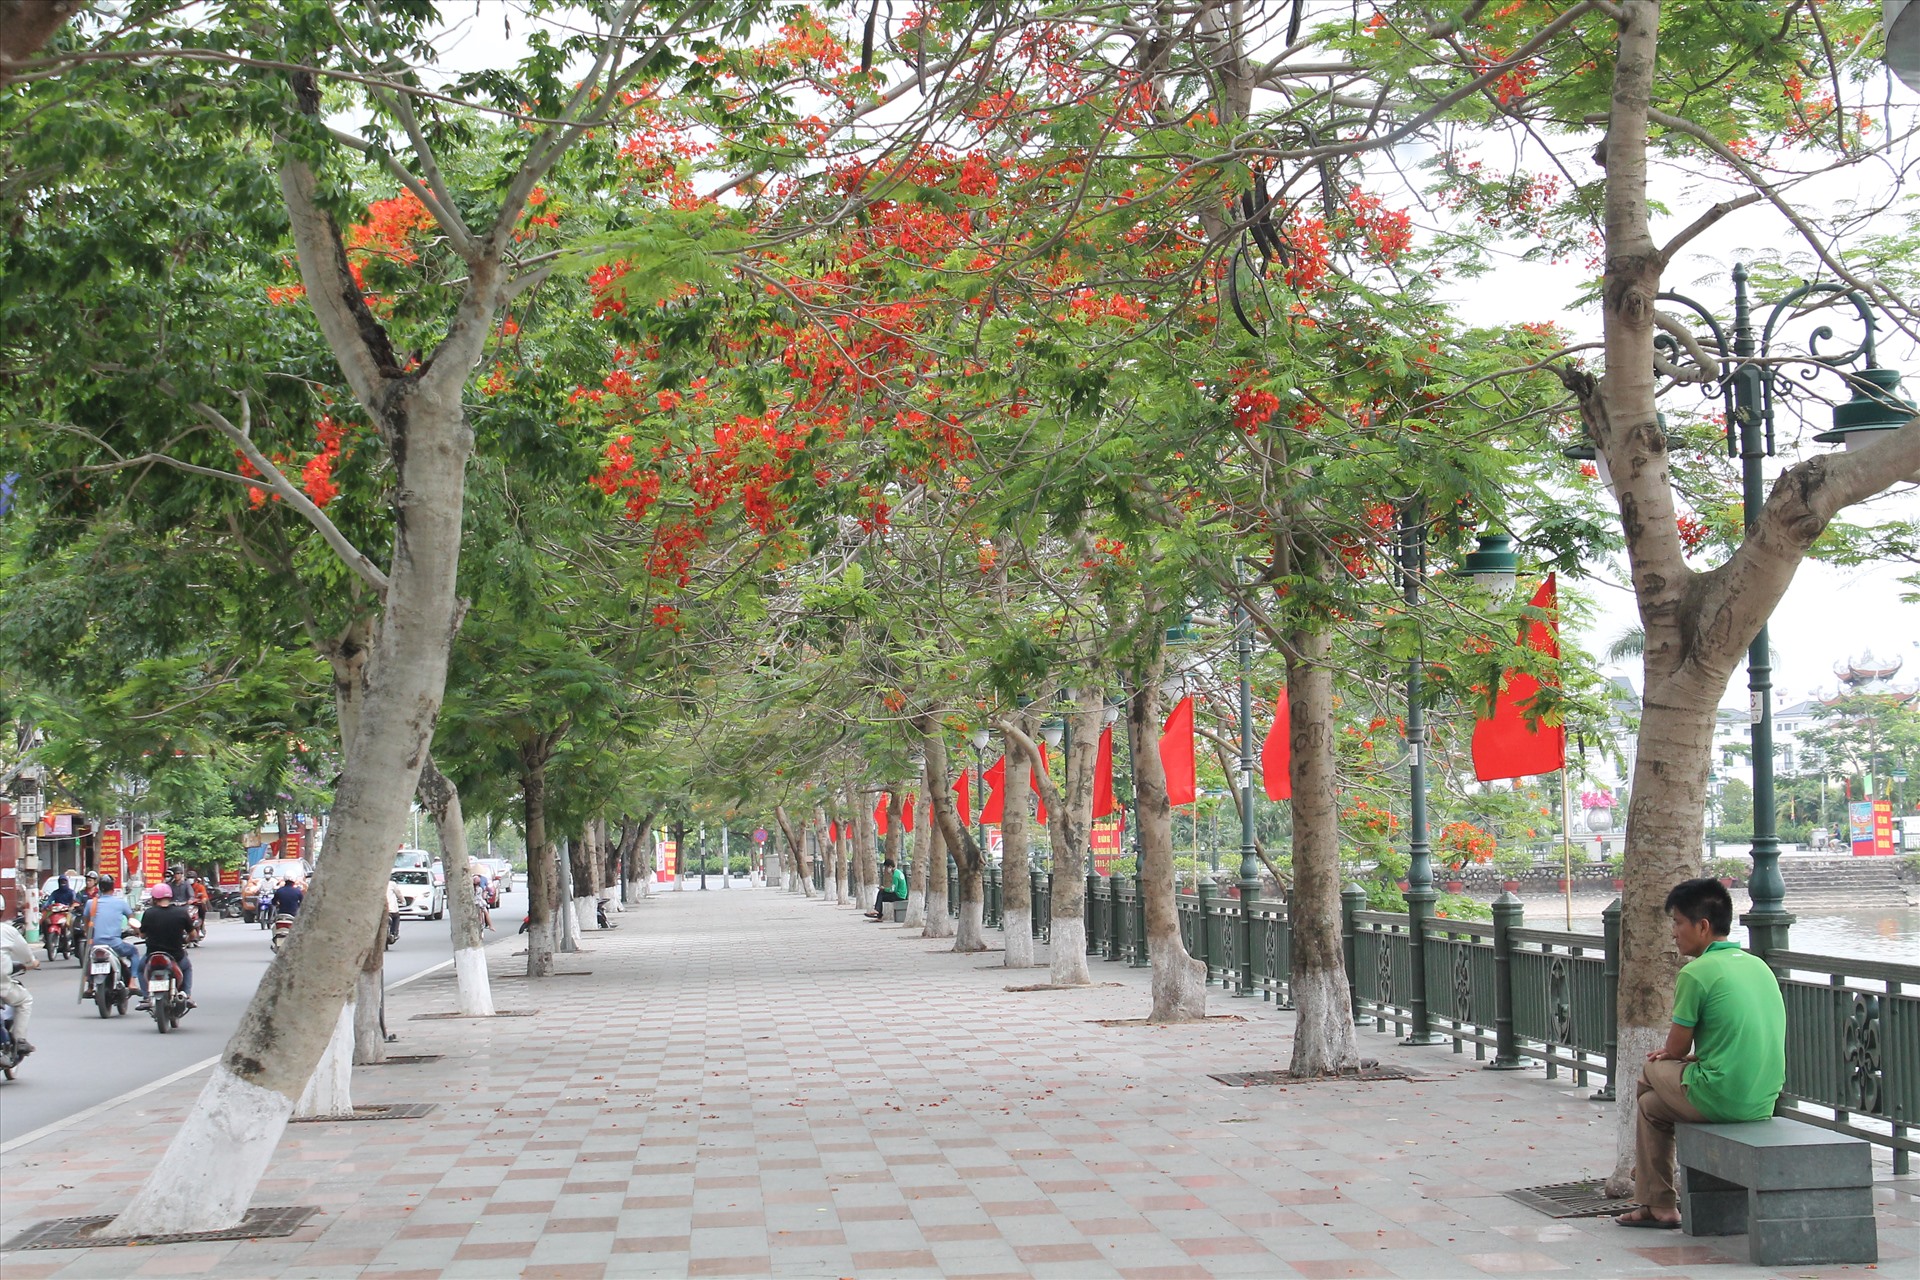 Người dân Hải Phòng lo ngại cây phượng biểu tượng của thành phố bị chặt hạ hàng loạt sau sự cố tại TP Hồ Chí Minh. Ảnh MD